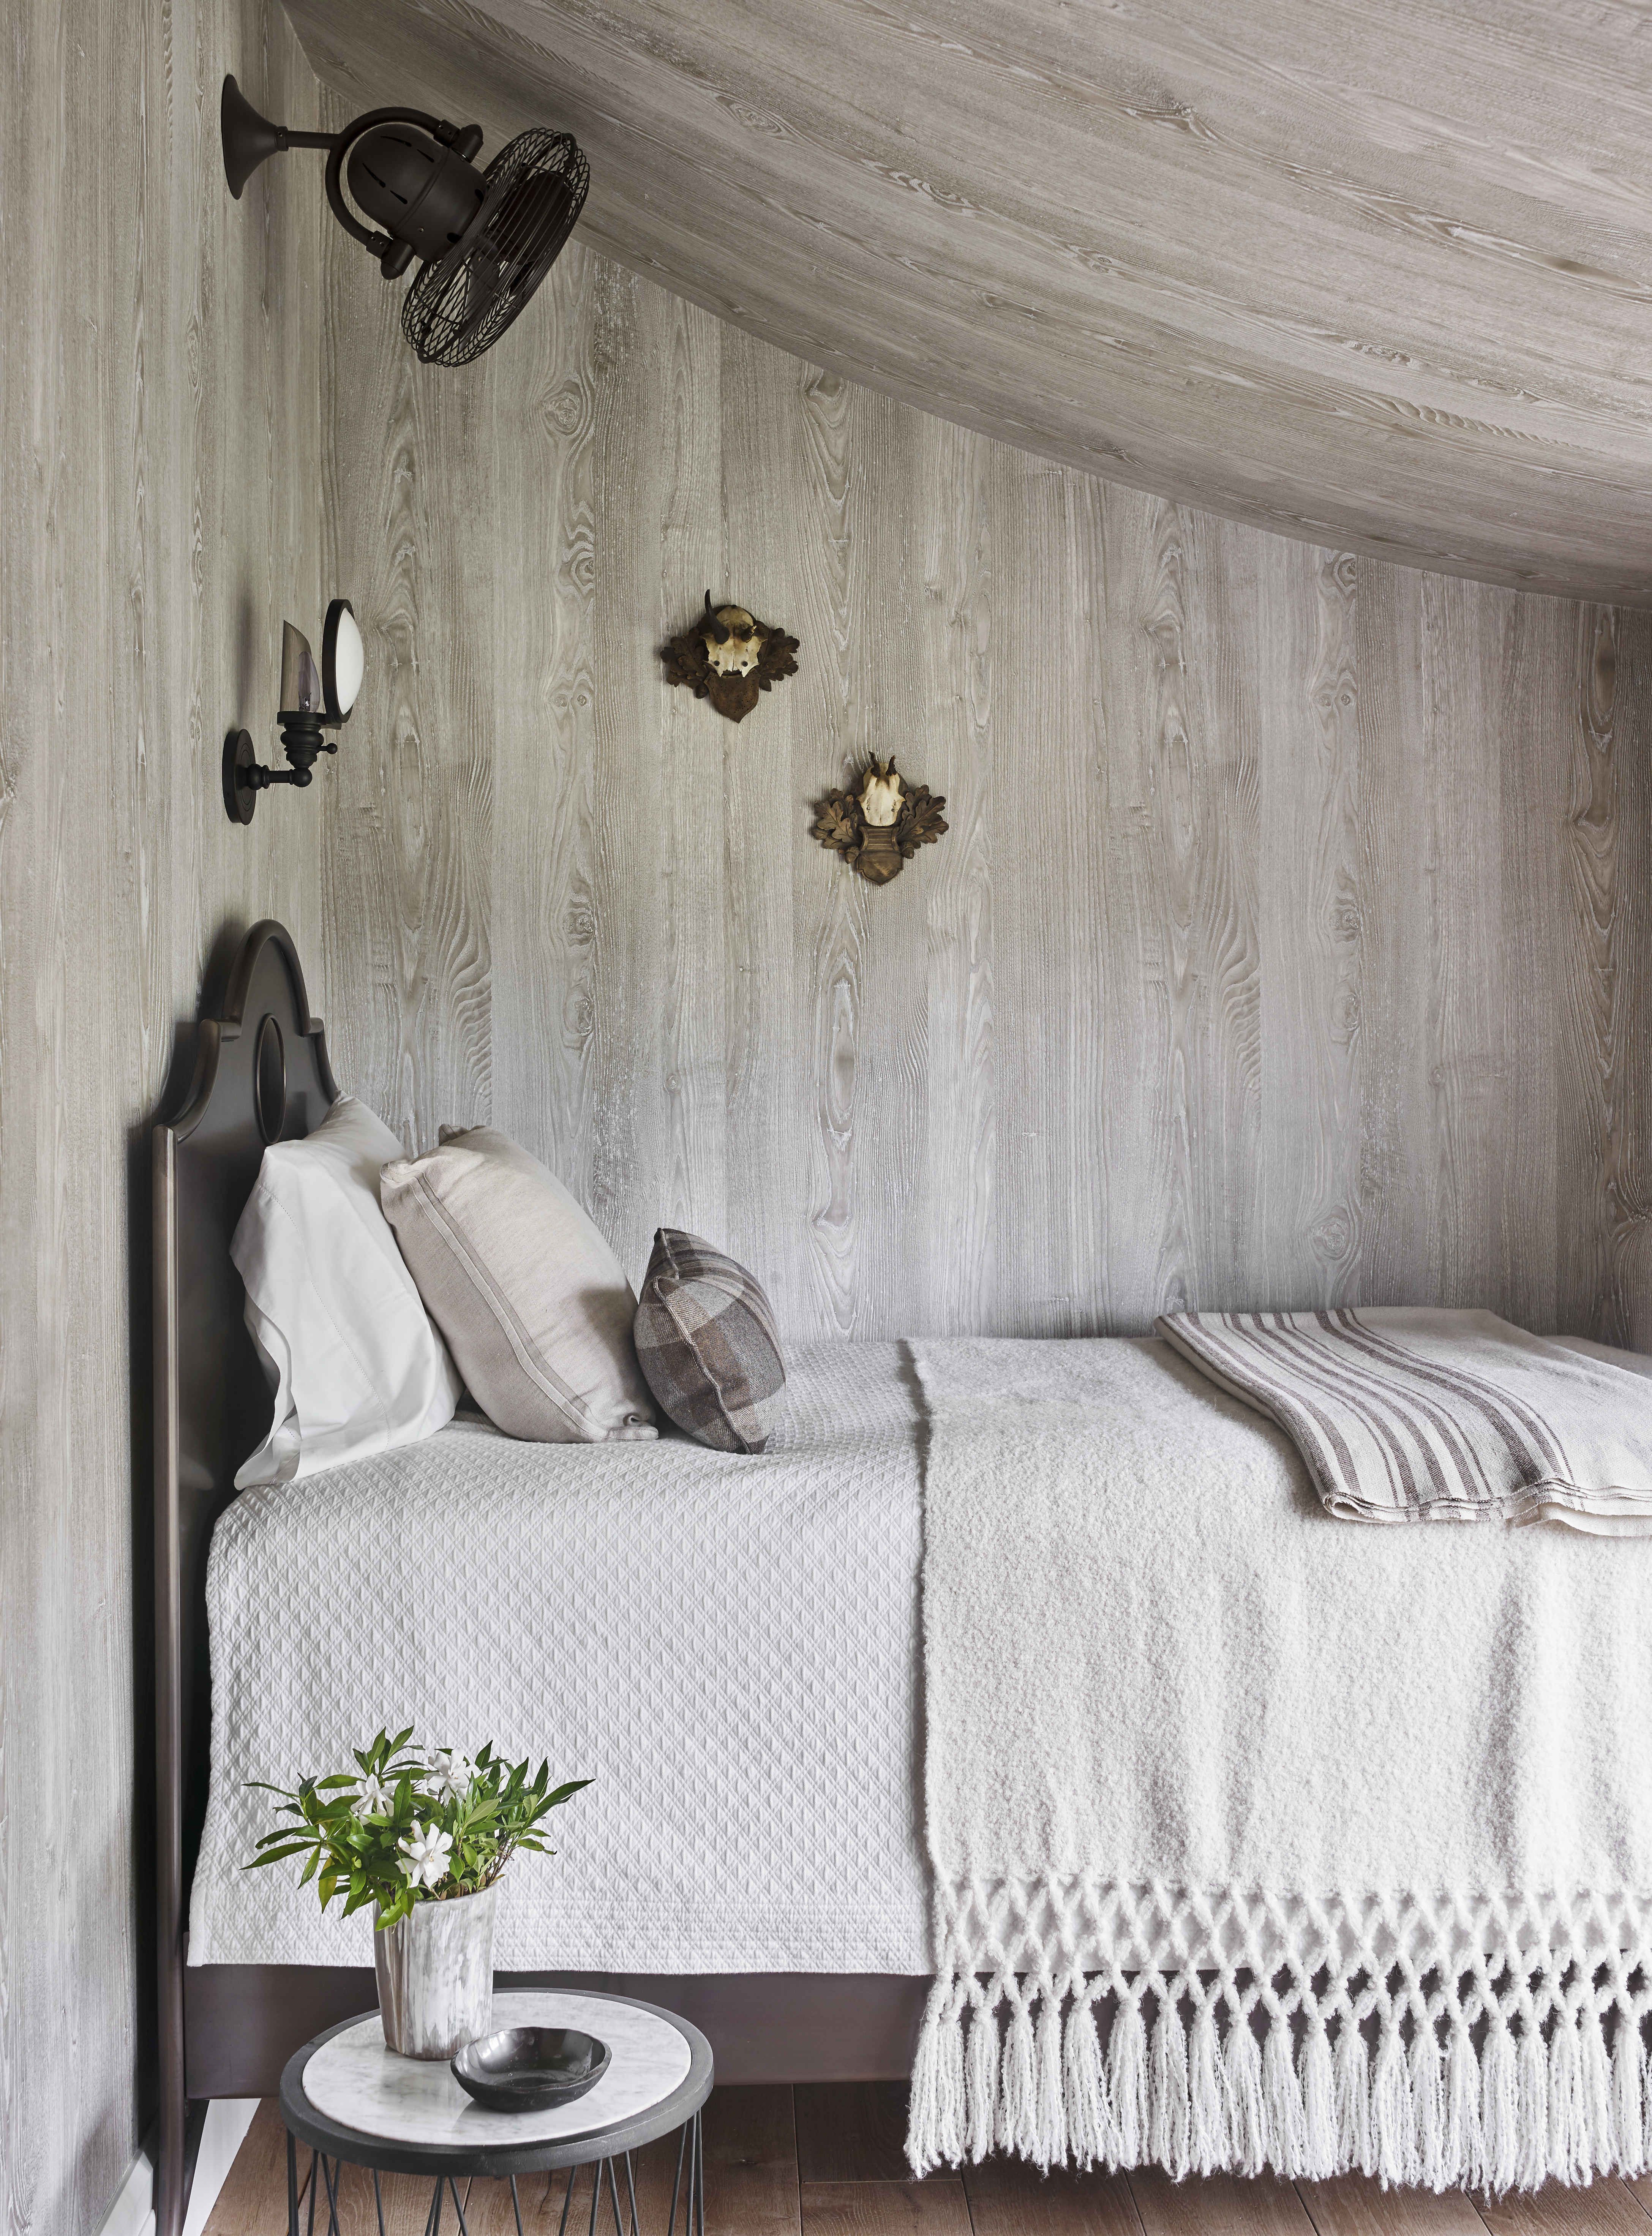 55 Best Bedroom Ideas Beautiful Bedroom Decorating Tips